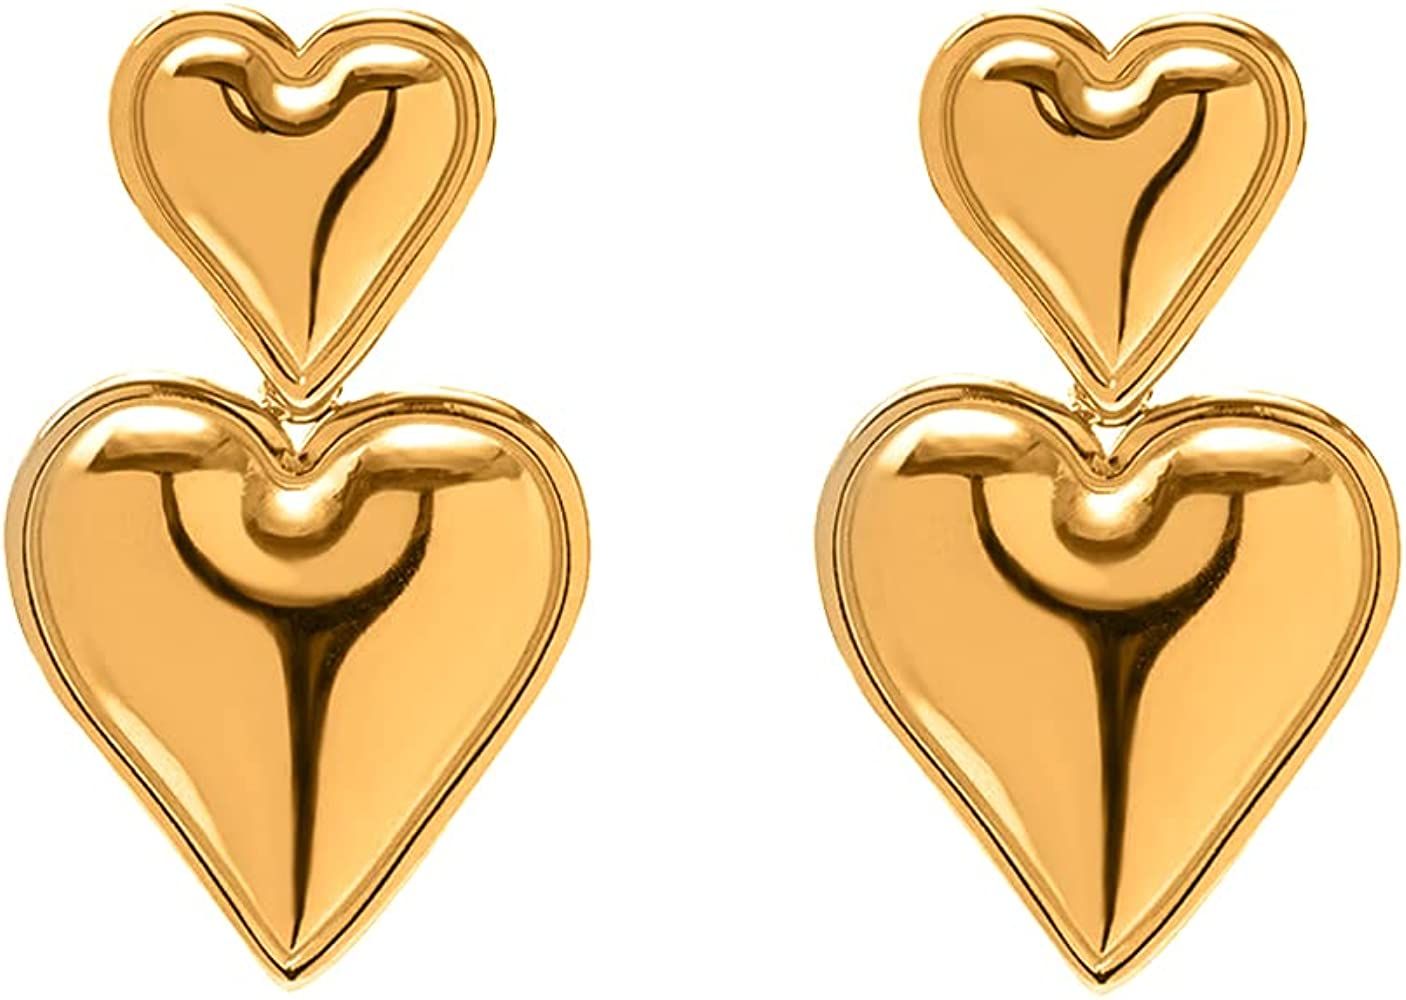 Heart Drop Earrings Double Heart Statement Dangle Earrings for Women Girls Gold Silver | Amazon (US)